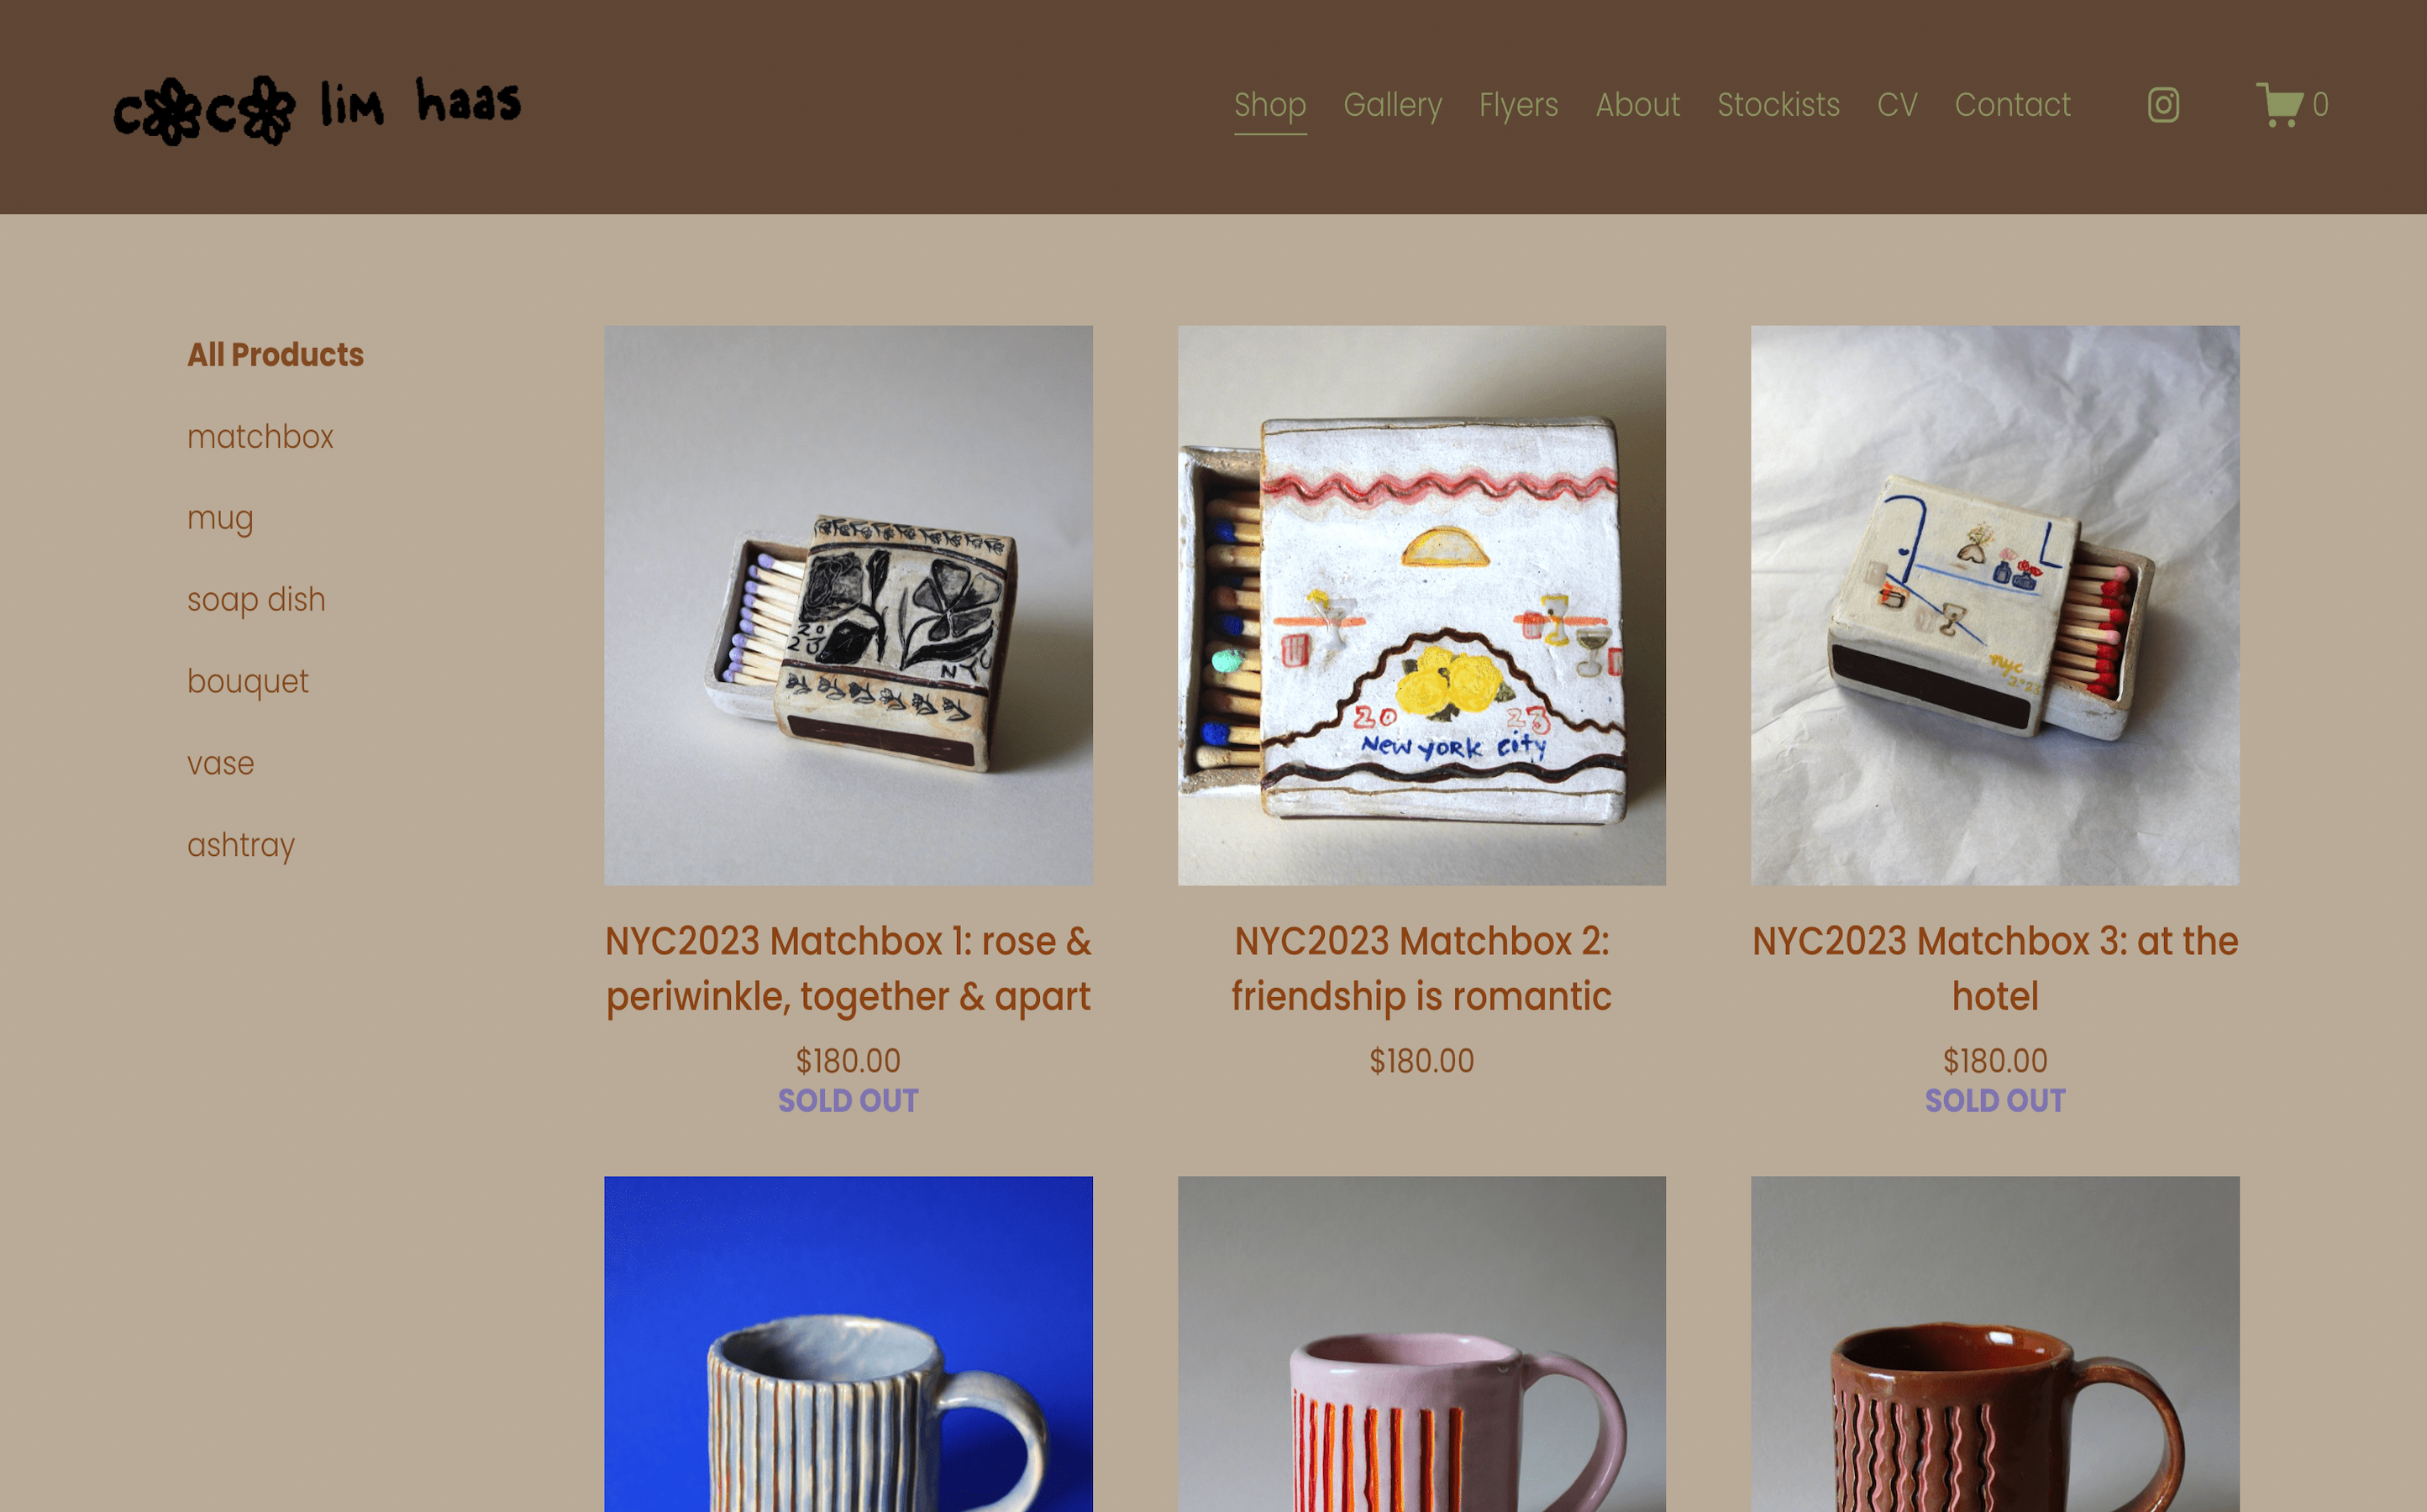 Coco Lim Haas Website Homepage